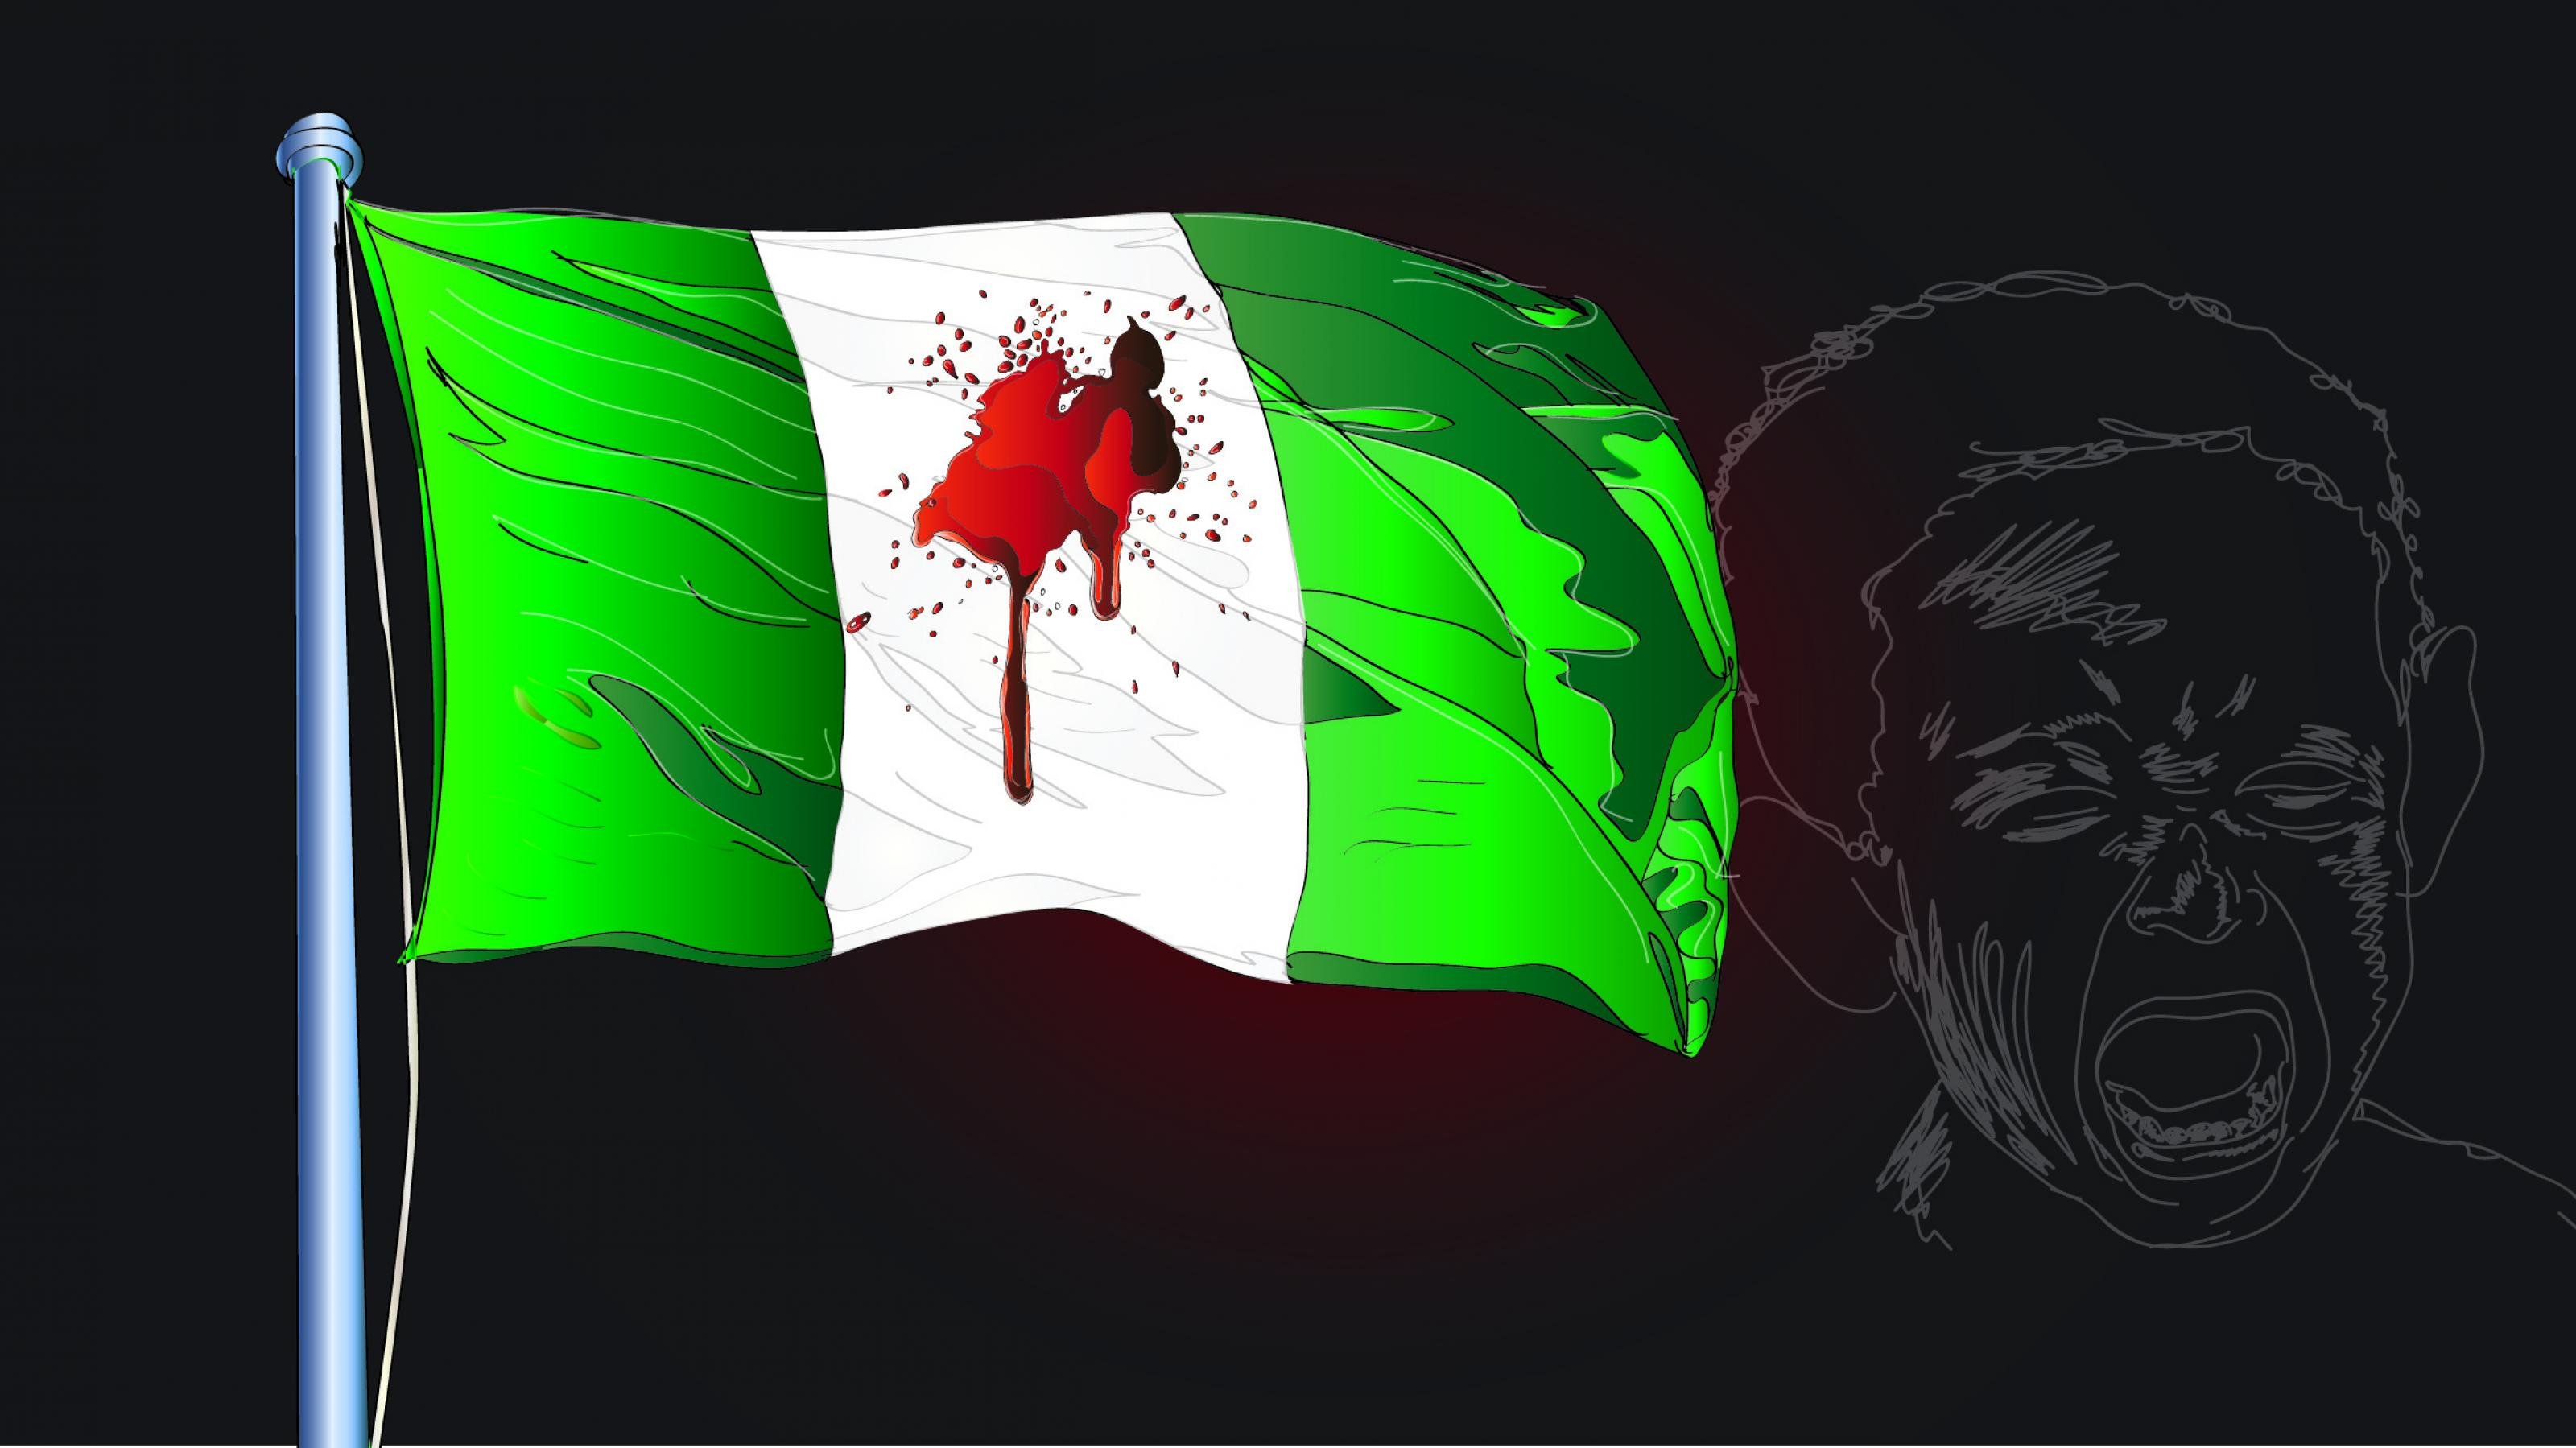 Das gezeichnete Bild zeigt eine Flagge von Nigeria mit Blutspritzern und das weinende Gesicht eines Kindes